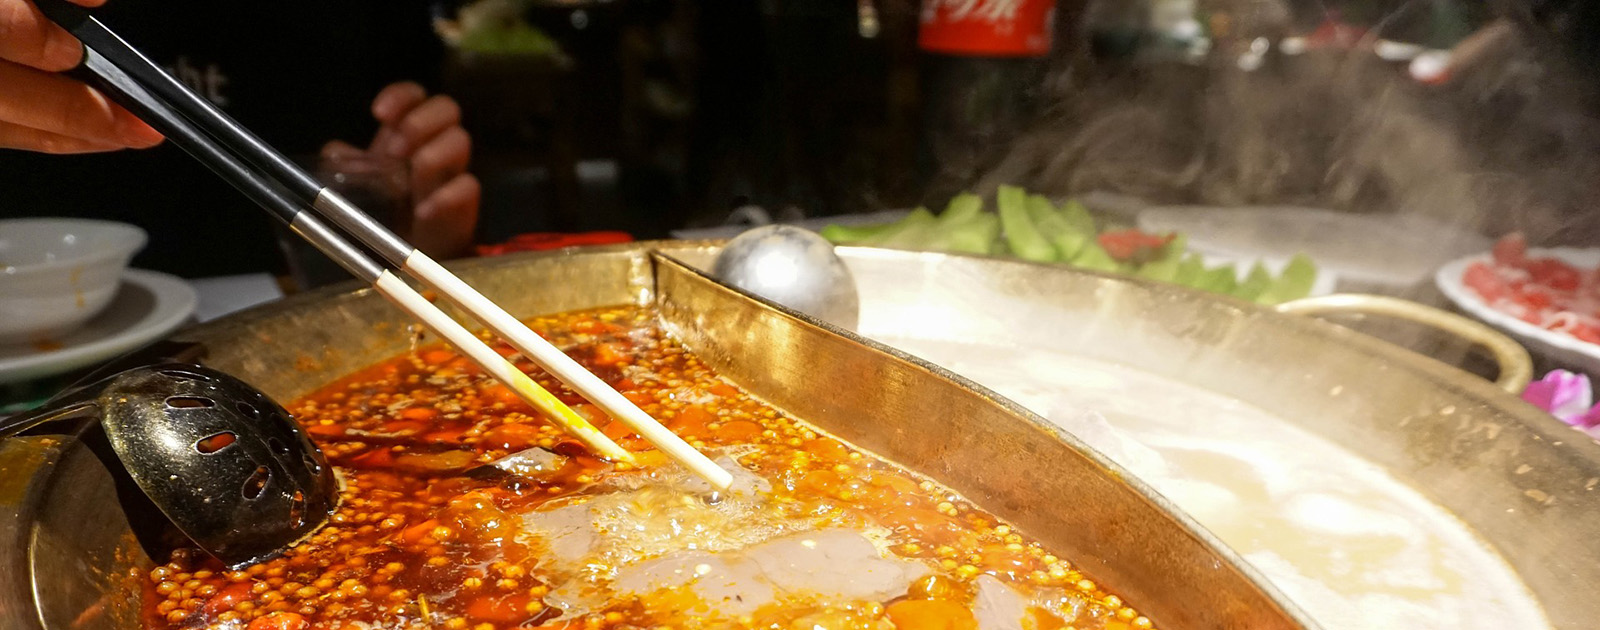 Un Restaurant Chinois à Volonté fait faillite après 2 semaines et 100,000$ de dettes